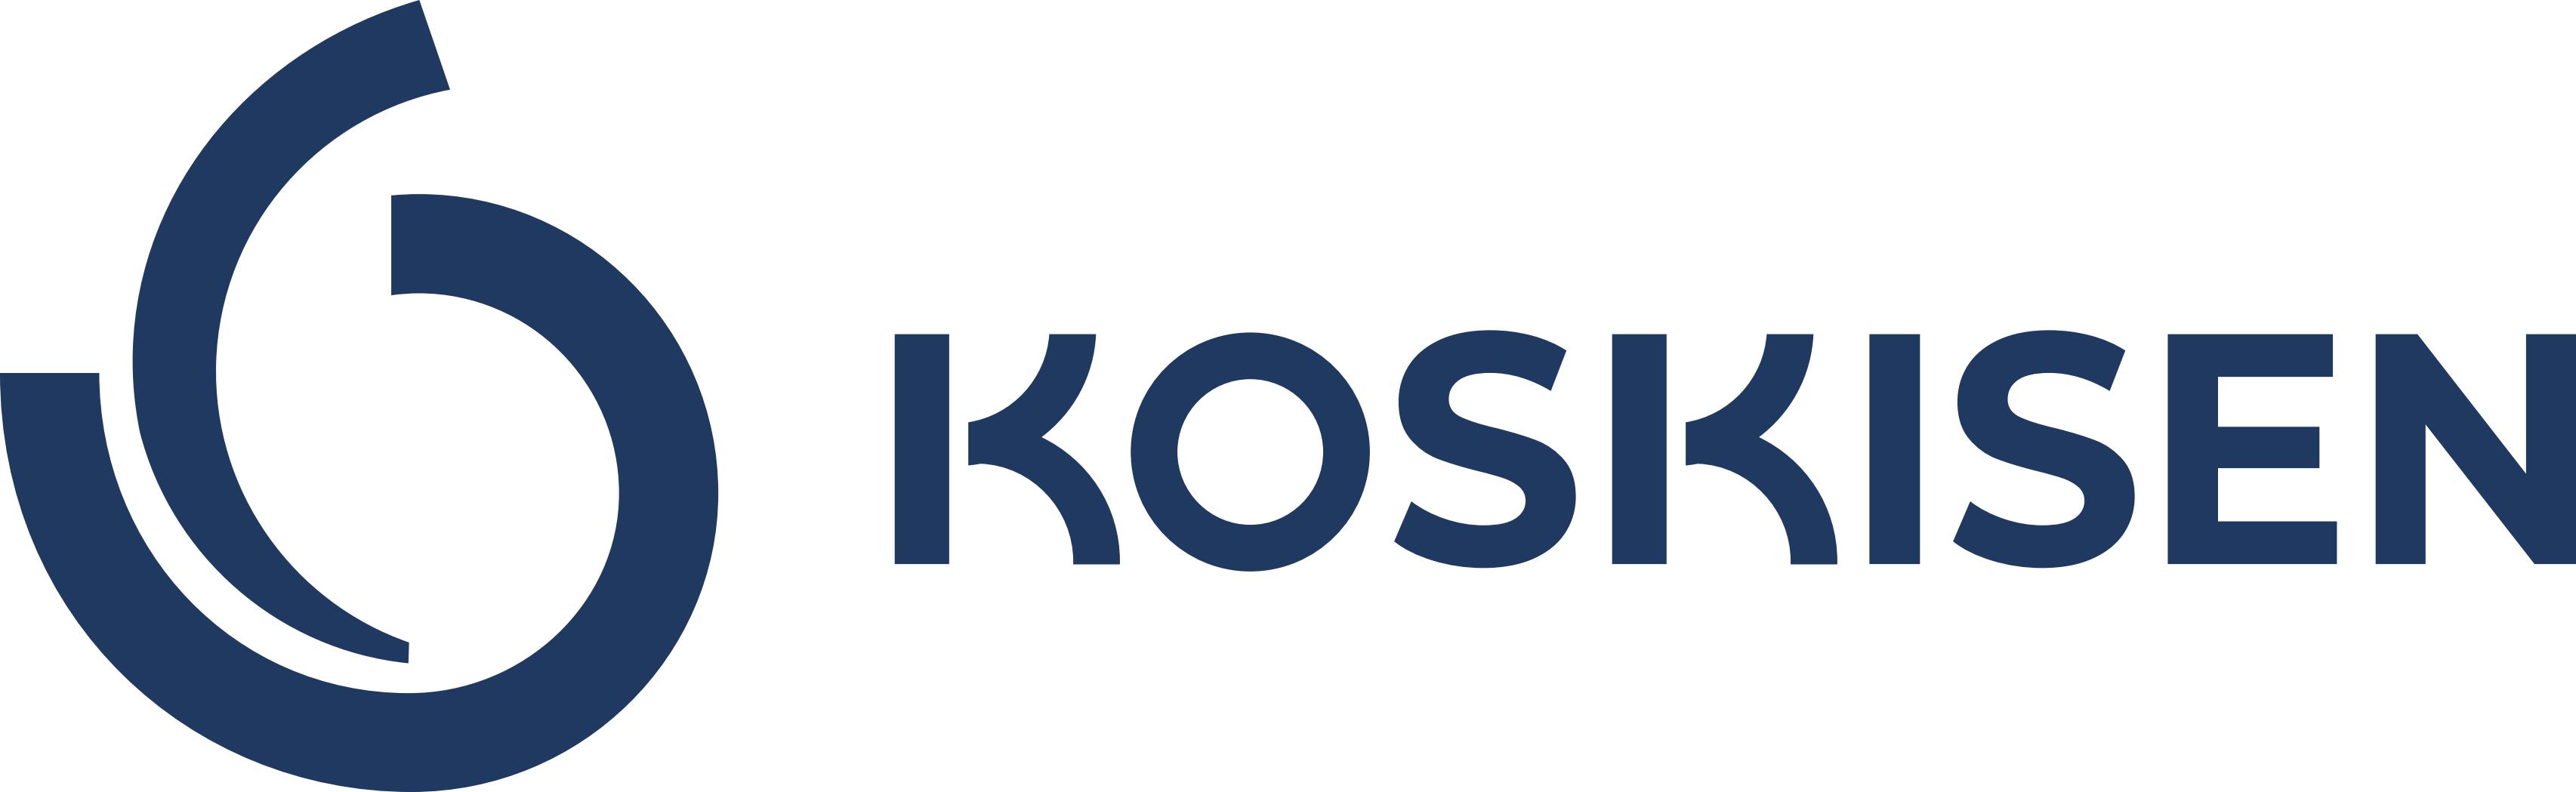 Logo Koskisen